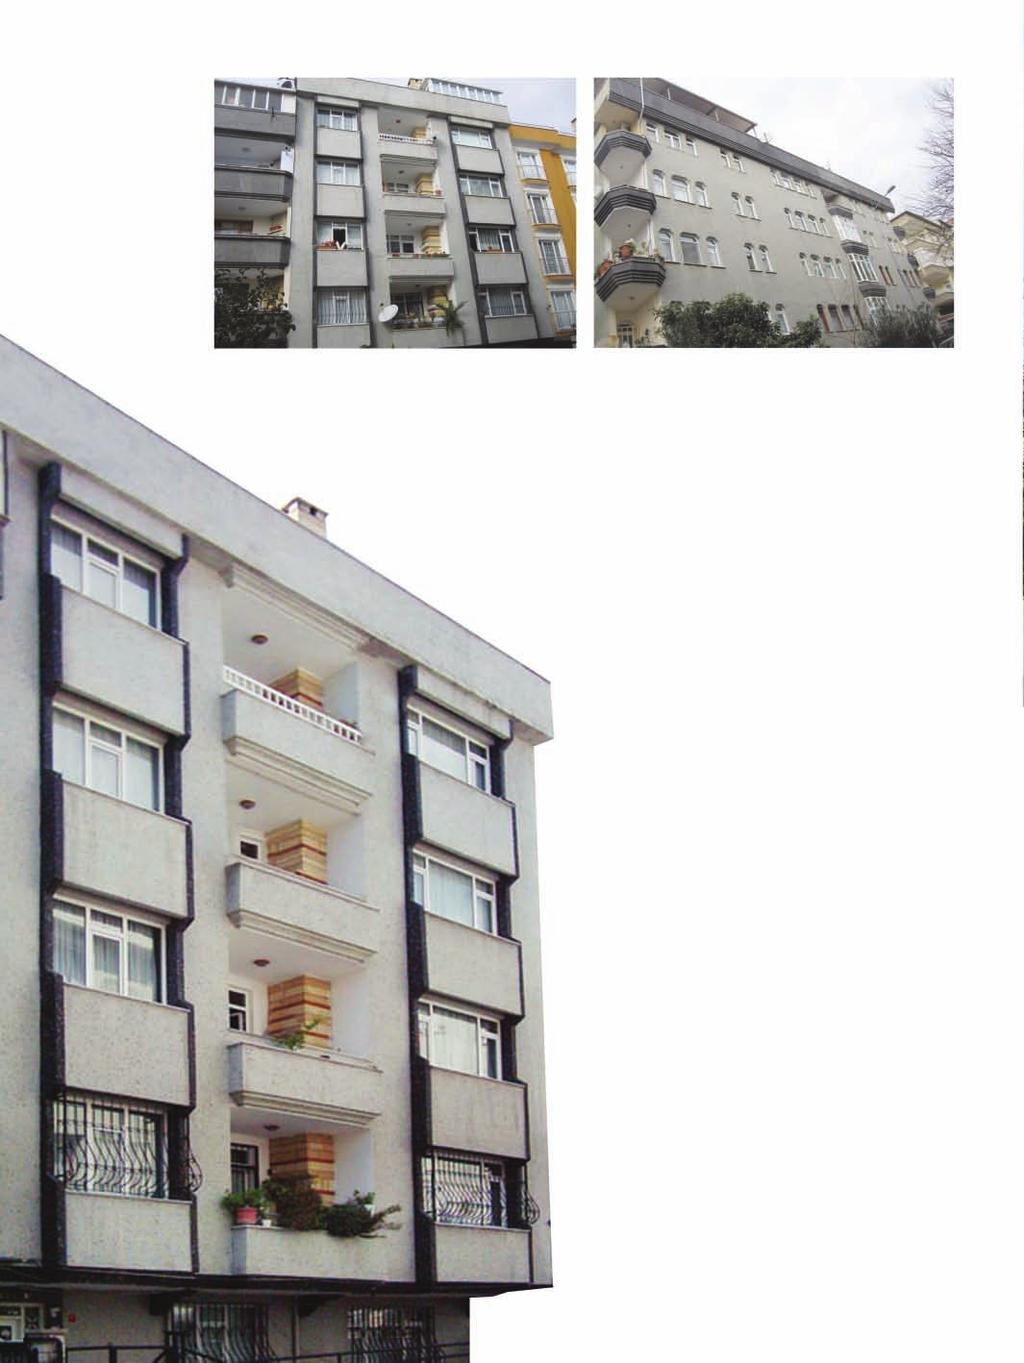 Enes Apartmanı Enes Apartment Building Proje Açıklaması: Denizköşklerde bulunan Enes Apartmanı 180 m 2 lik 5 dairen oluşmaktadır. Asdem Yapı binayı kendi özkaynaklarıyla finanse etmiştir.